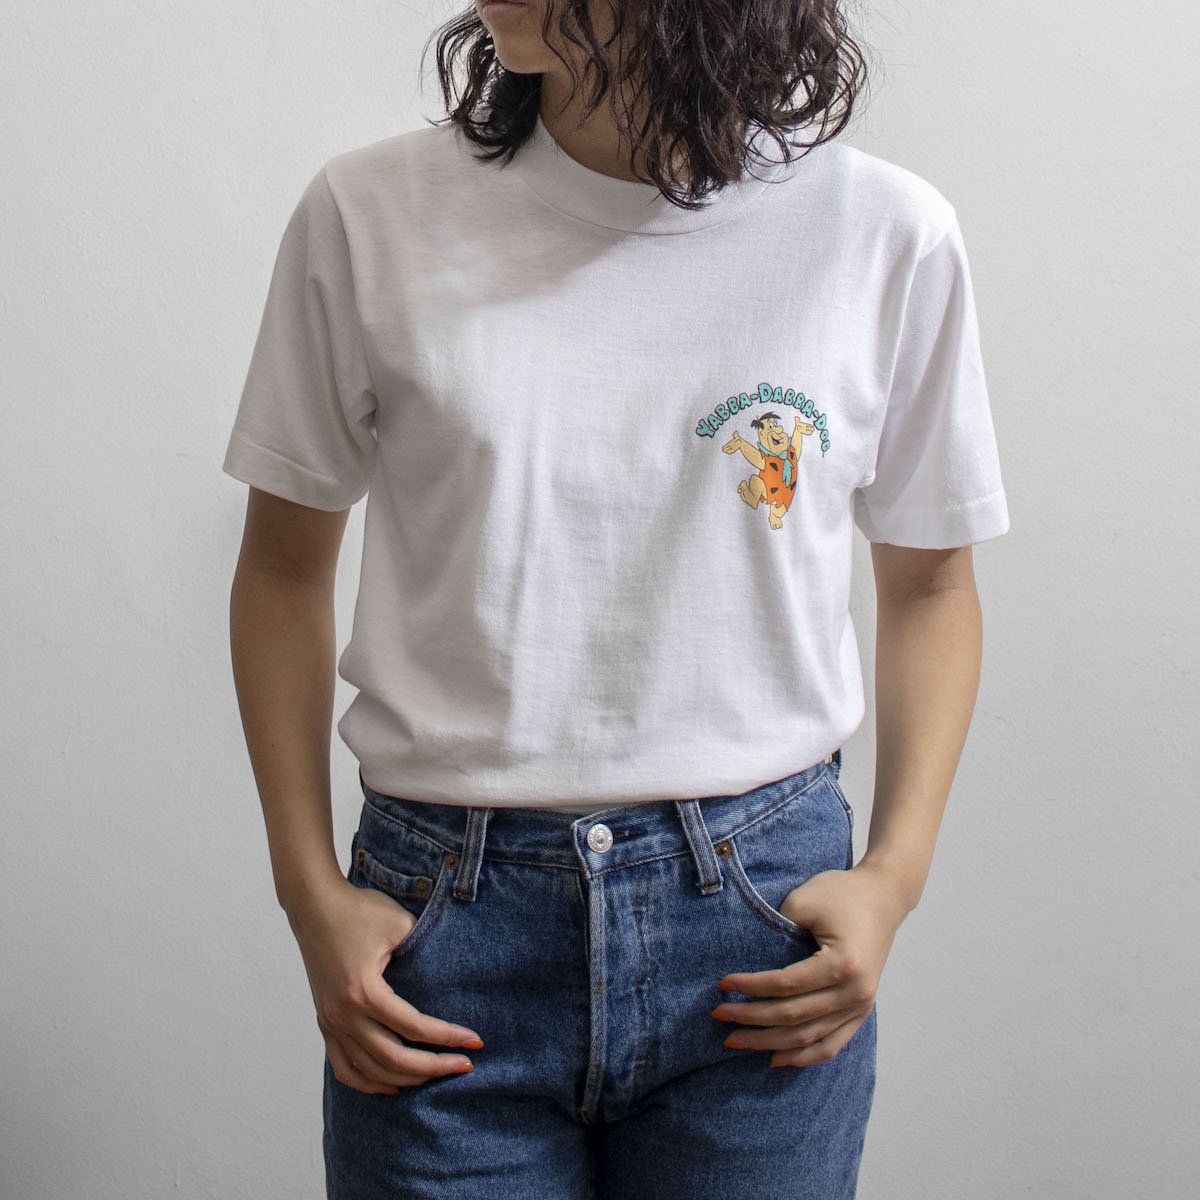 レディース] 1990s USA製 フリントストーン アニメTシャツ ホワイト 4070-8